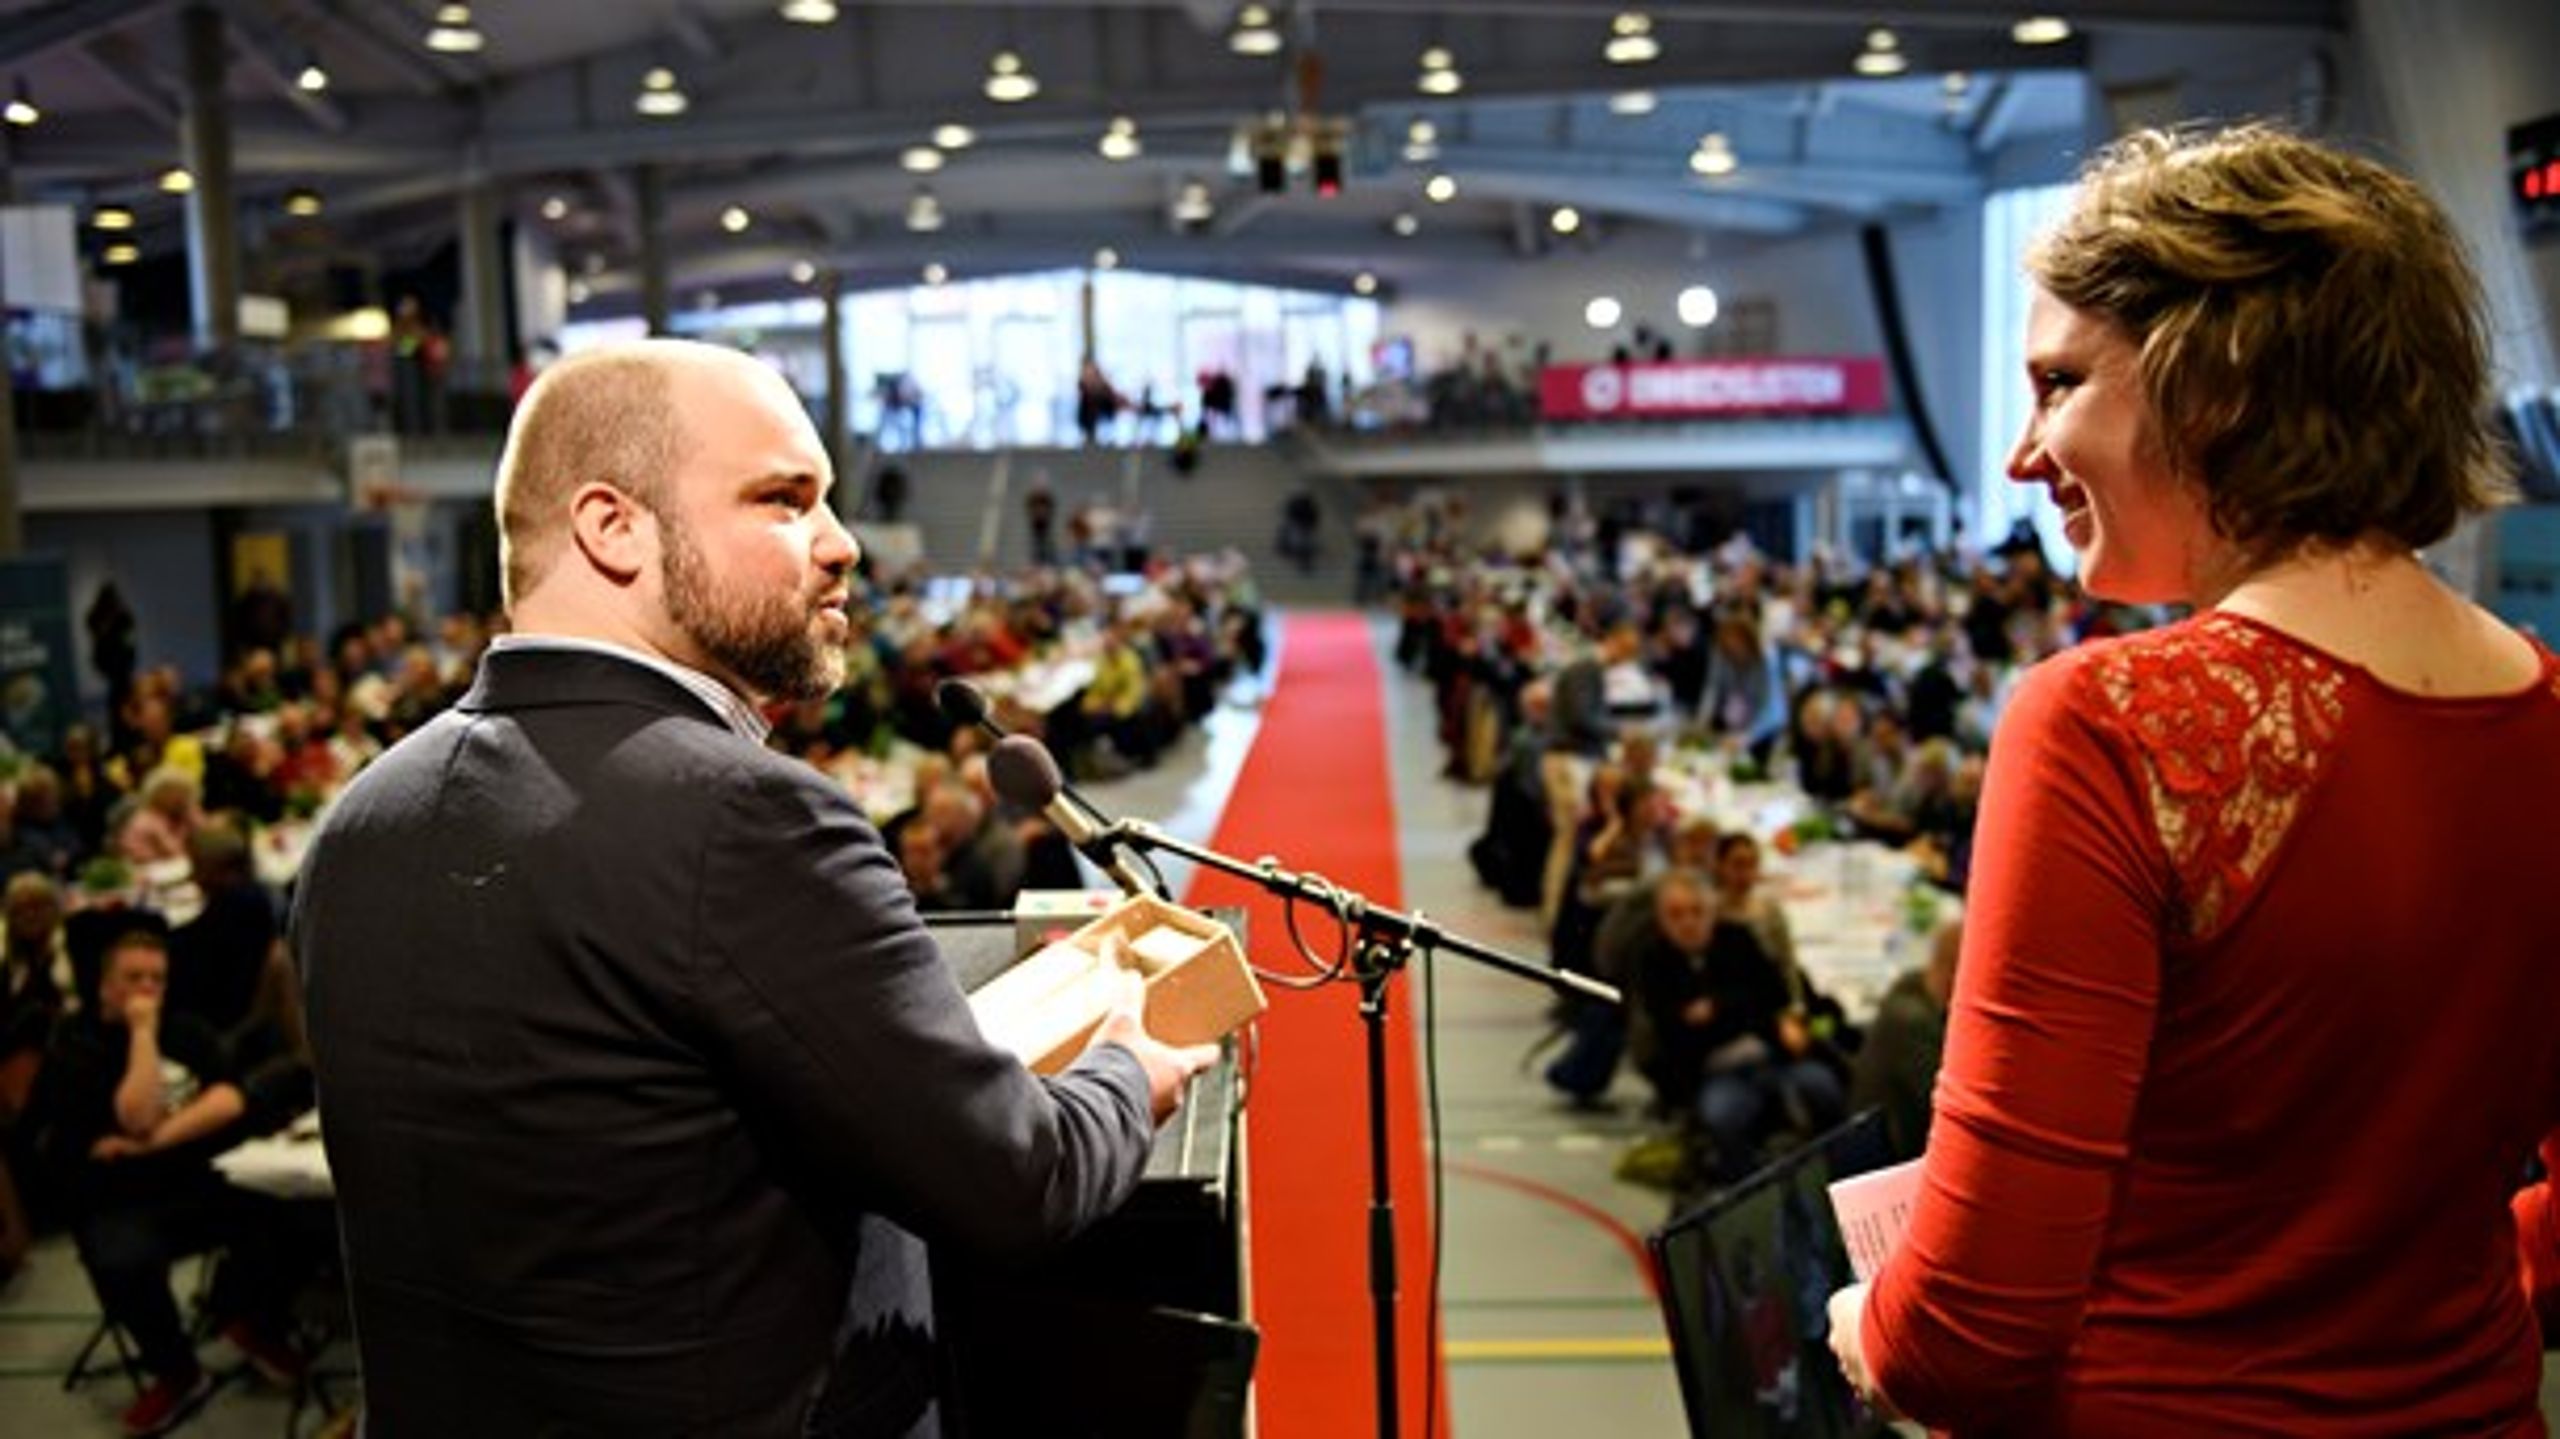 Nikolaj Villumsen og Rina Ronja Kari fra Folkebevægelsen mod EU var på scenen til Enhedslistens årsmøde. Næste år vil de kæmpe om hinandens stemmer til Europa-Parlamentsvalget.